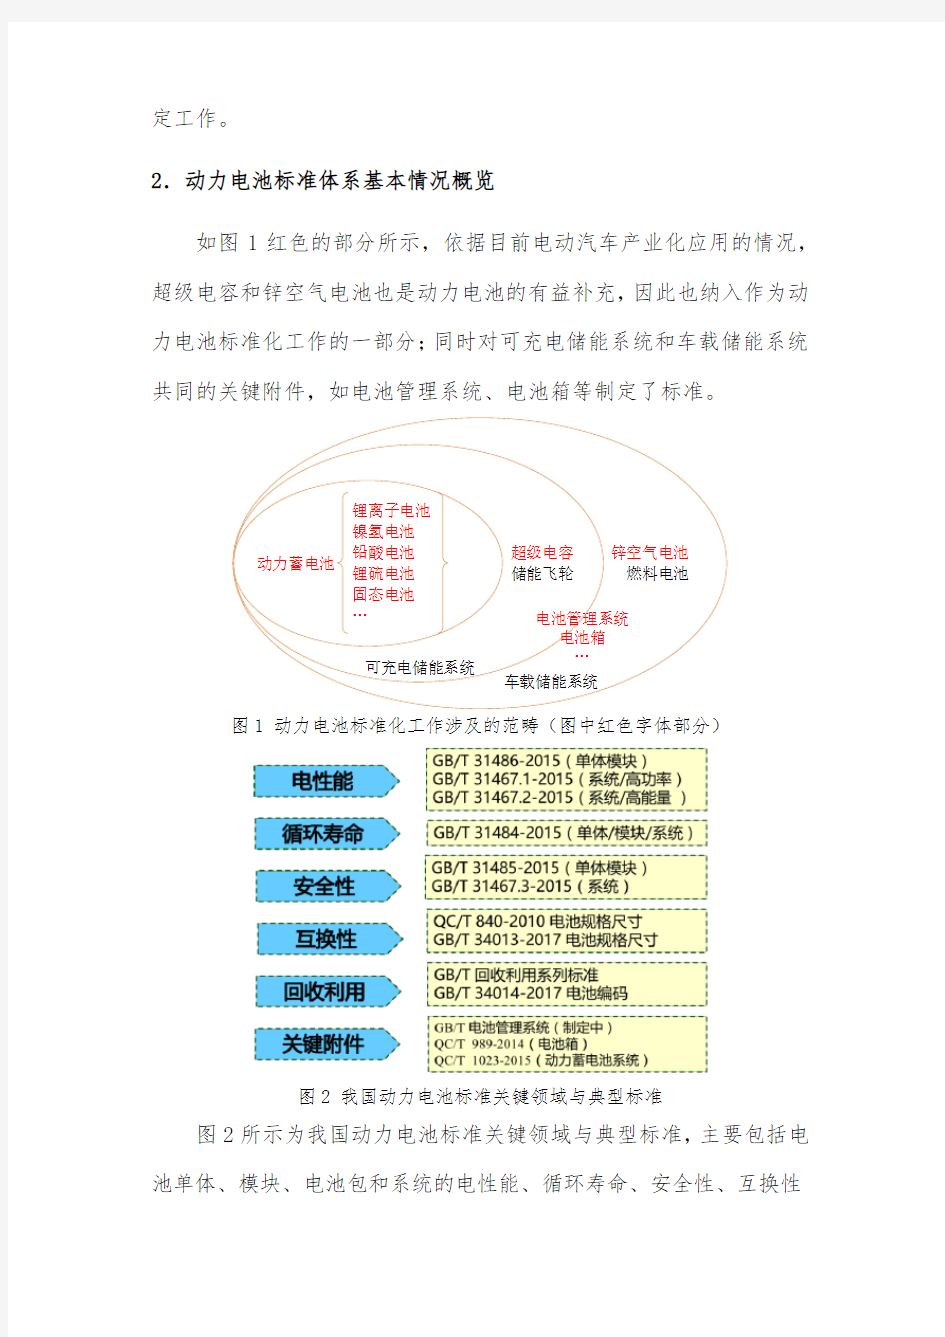 中国动力电池标准体系建设基本情况